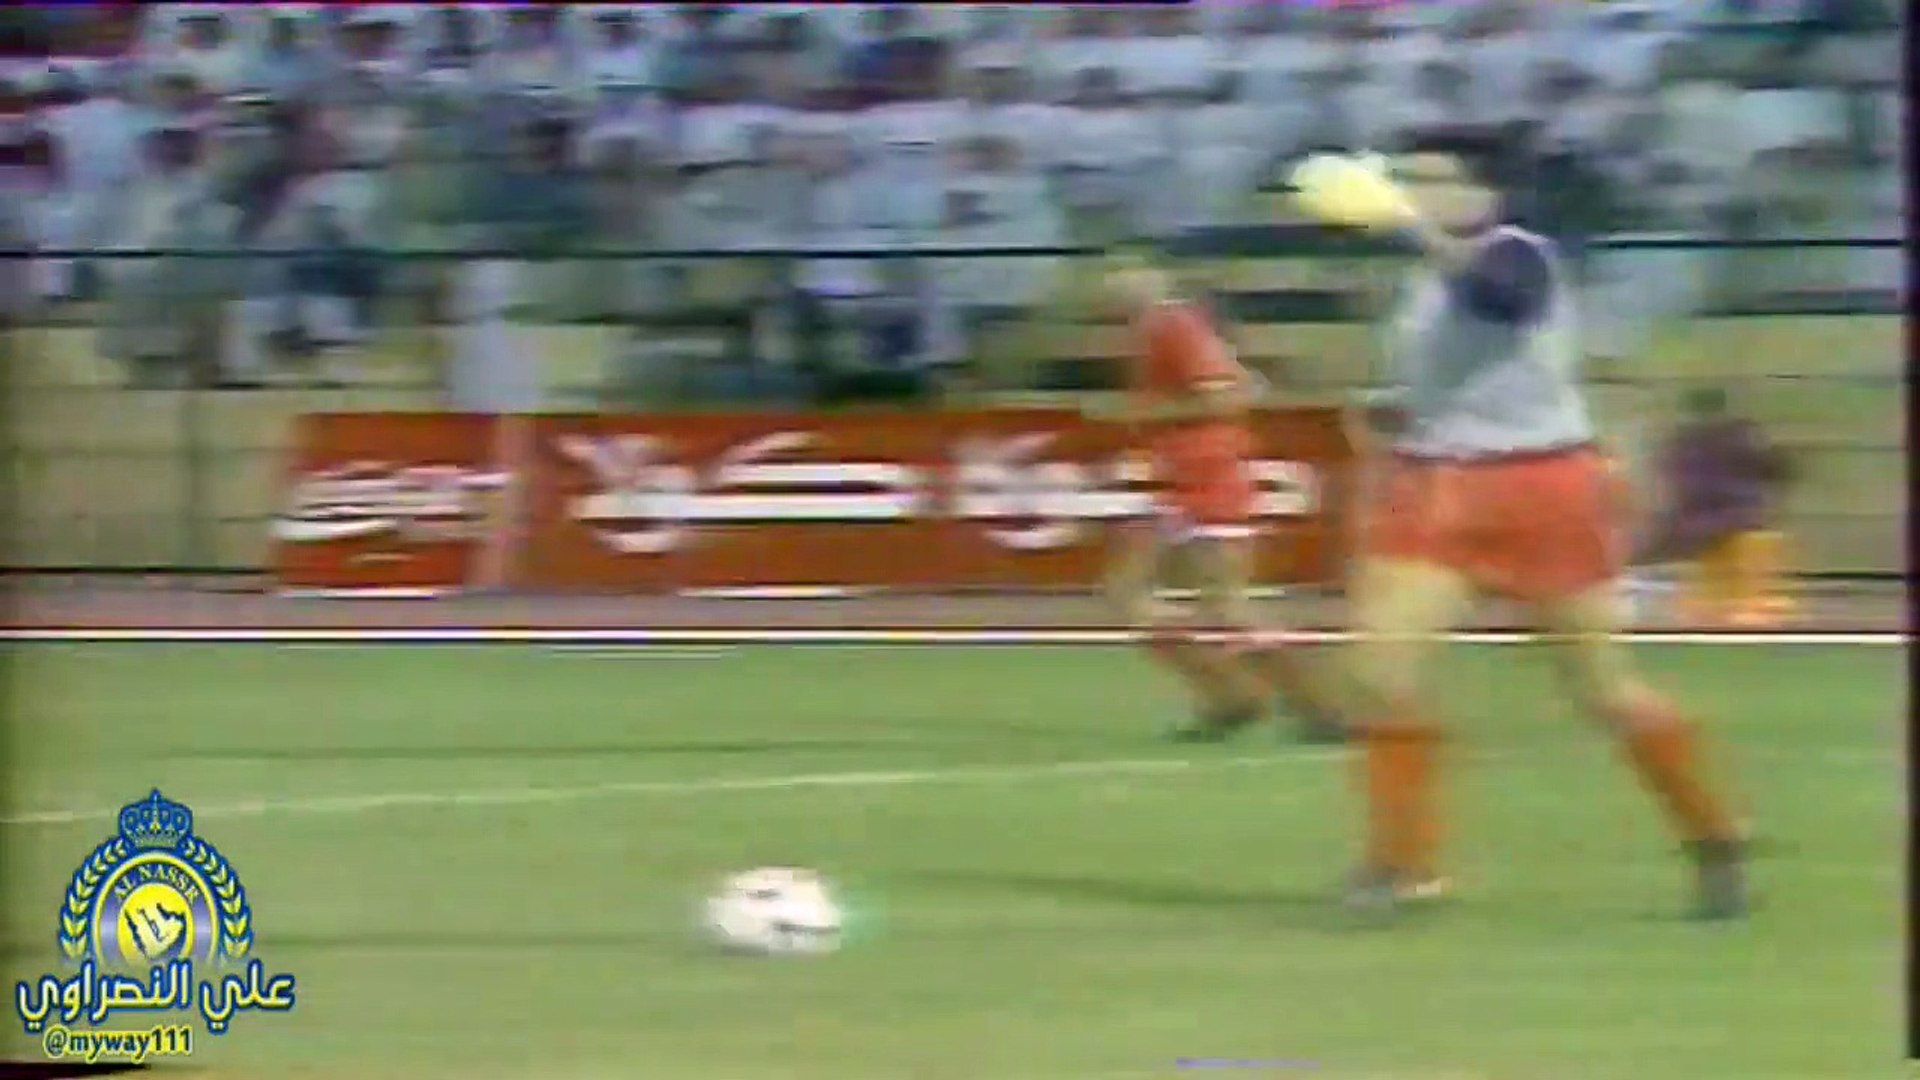 الشوط الثاني مباراة السعودية و سوريا 2-0 كاس اسيا 1988 - video Dailymotion